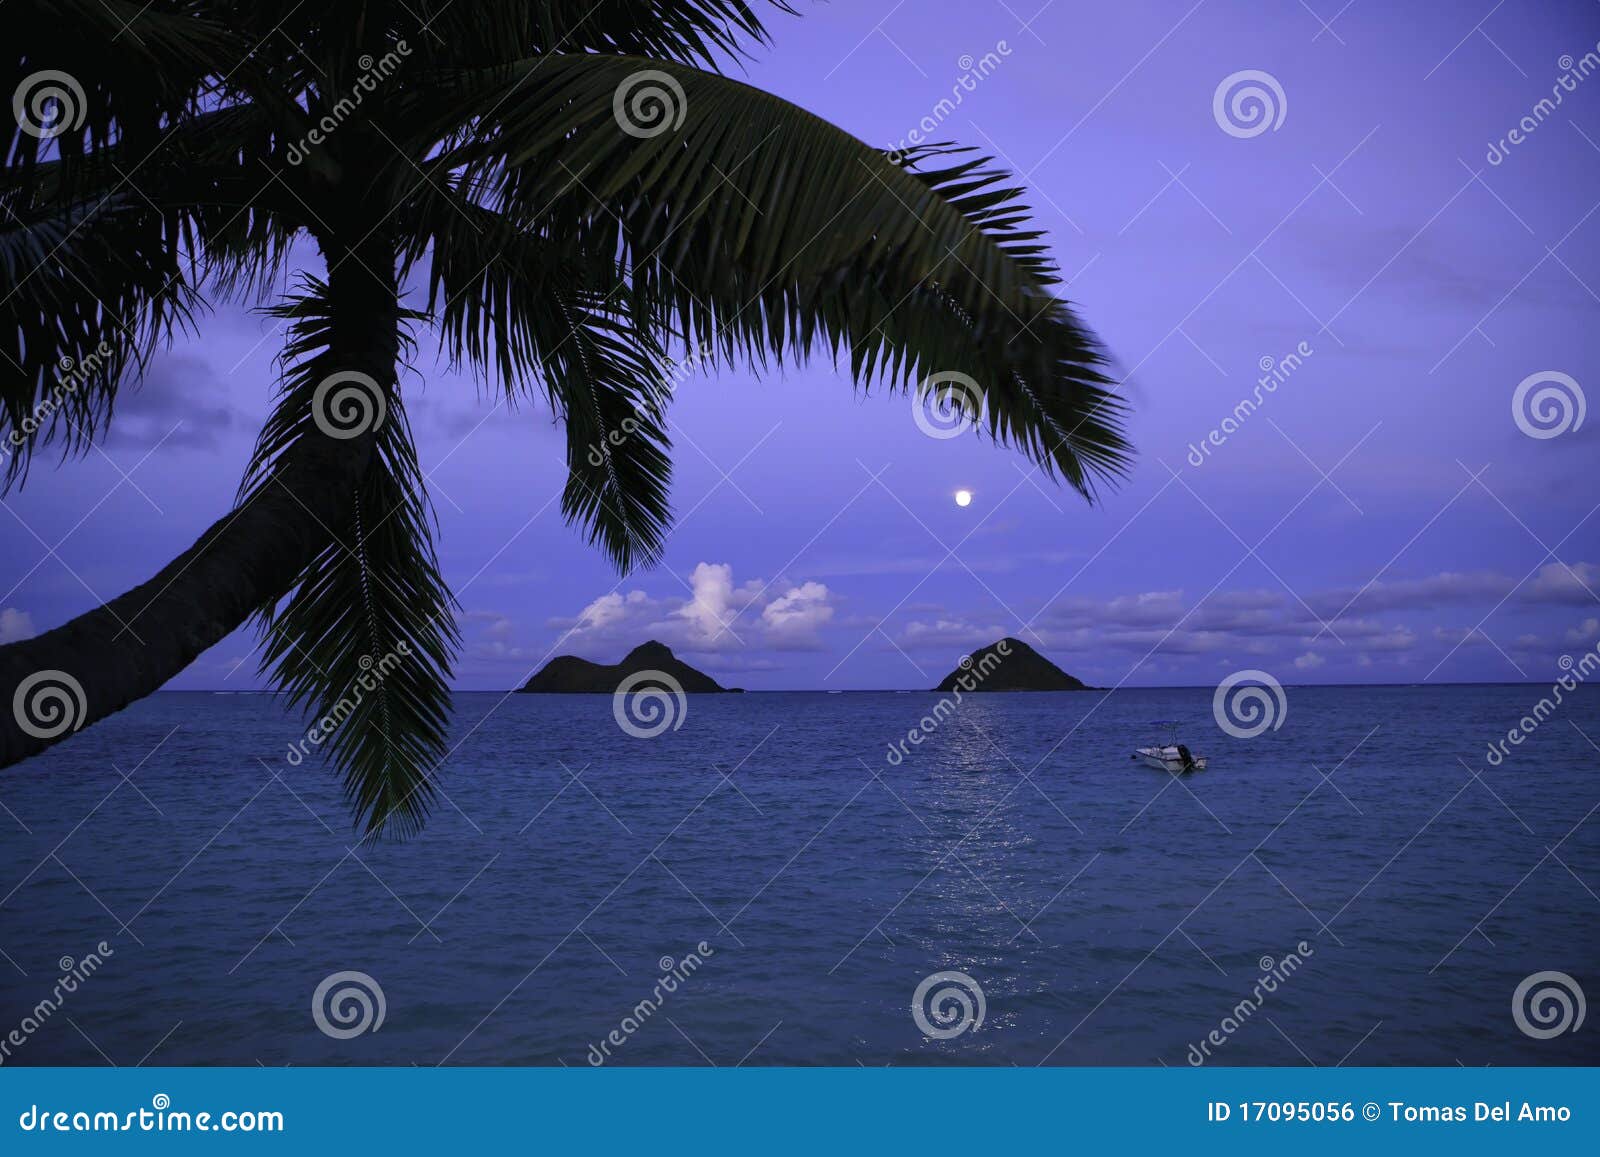 moonrise in hawaii